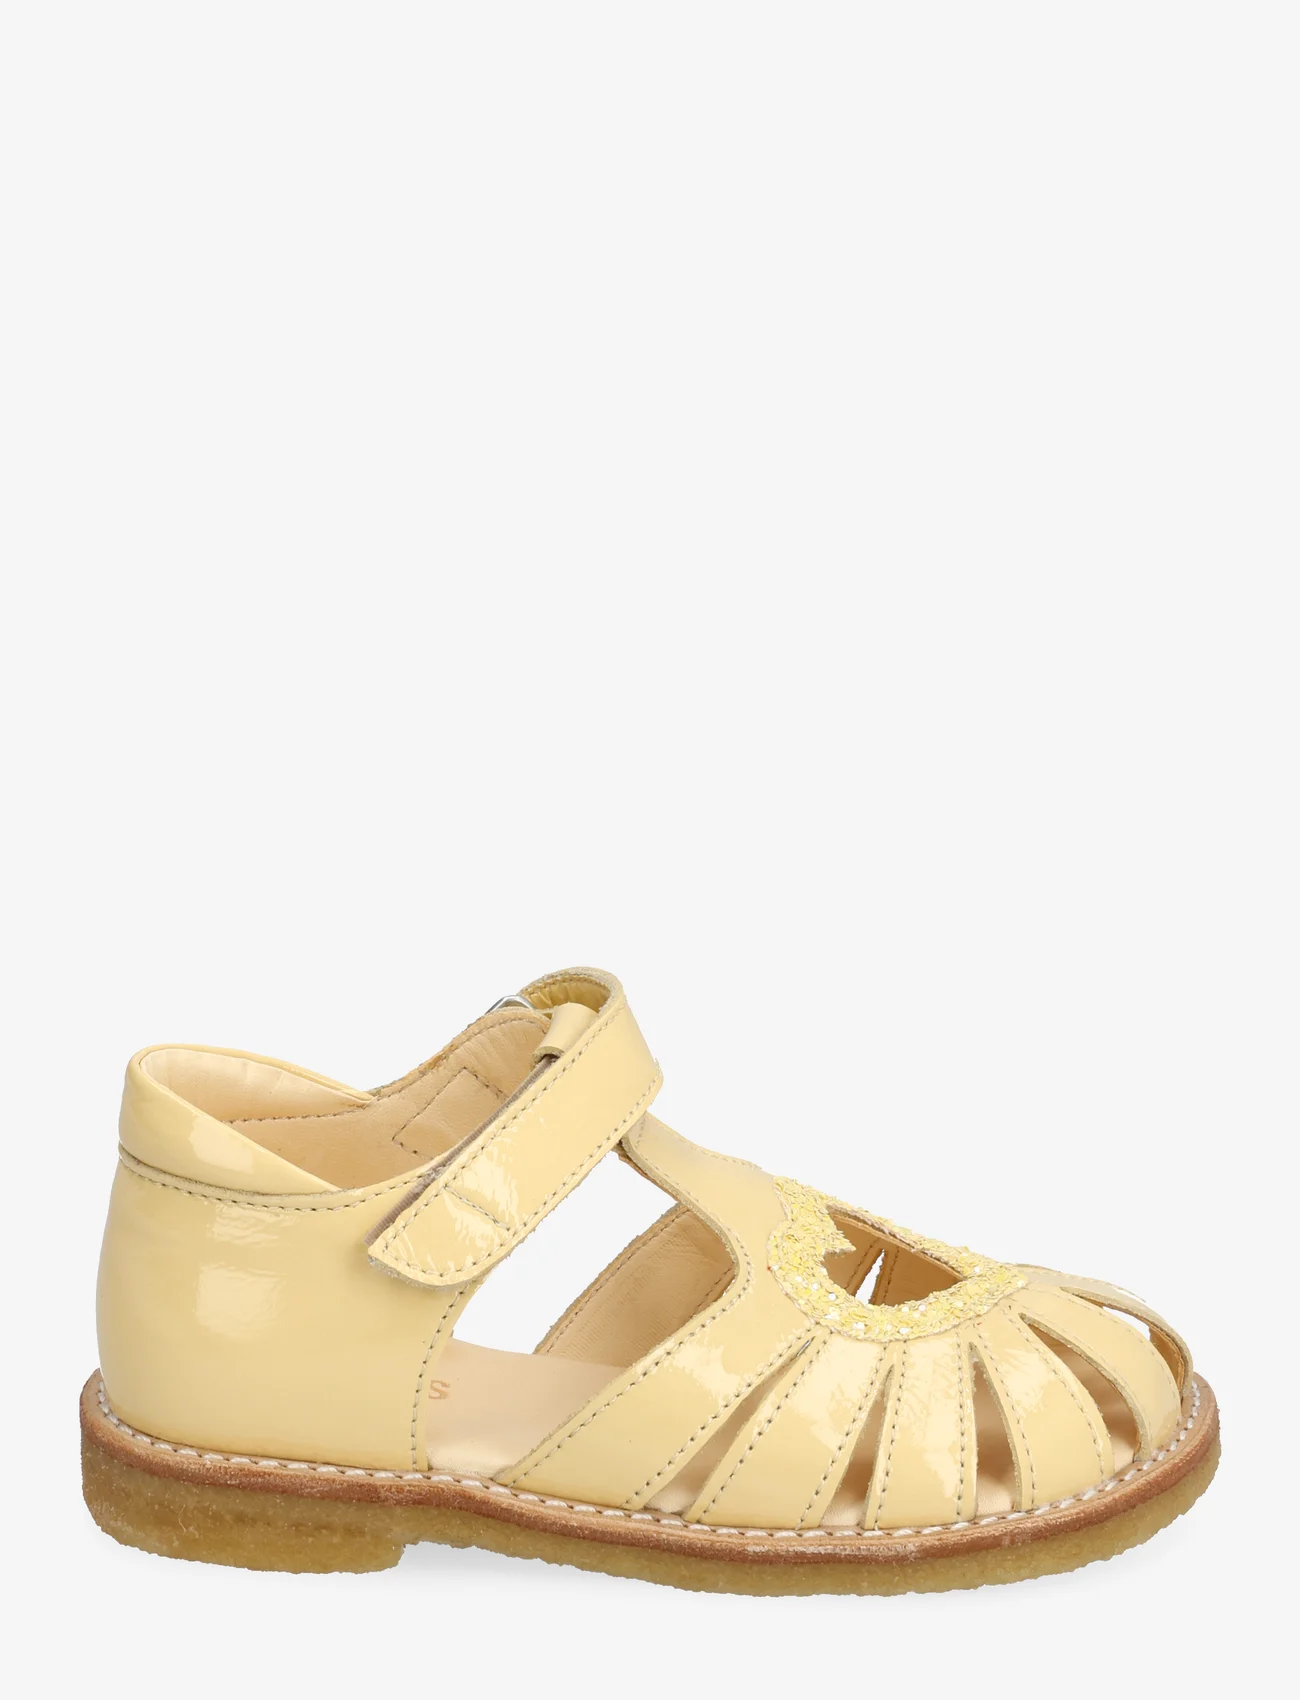 ANGULUS - Sandals - flat - closed toe - - sommerschnäppchen - 2706/2825 mellow yellow/pineap - 1